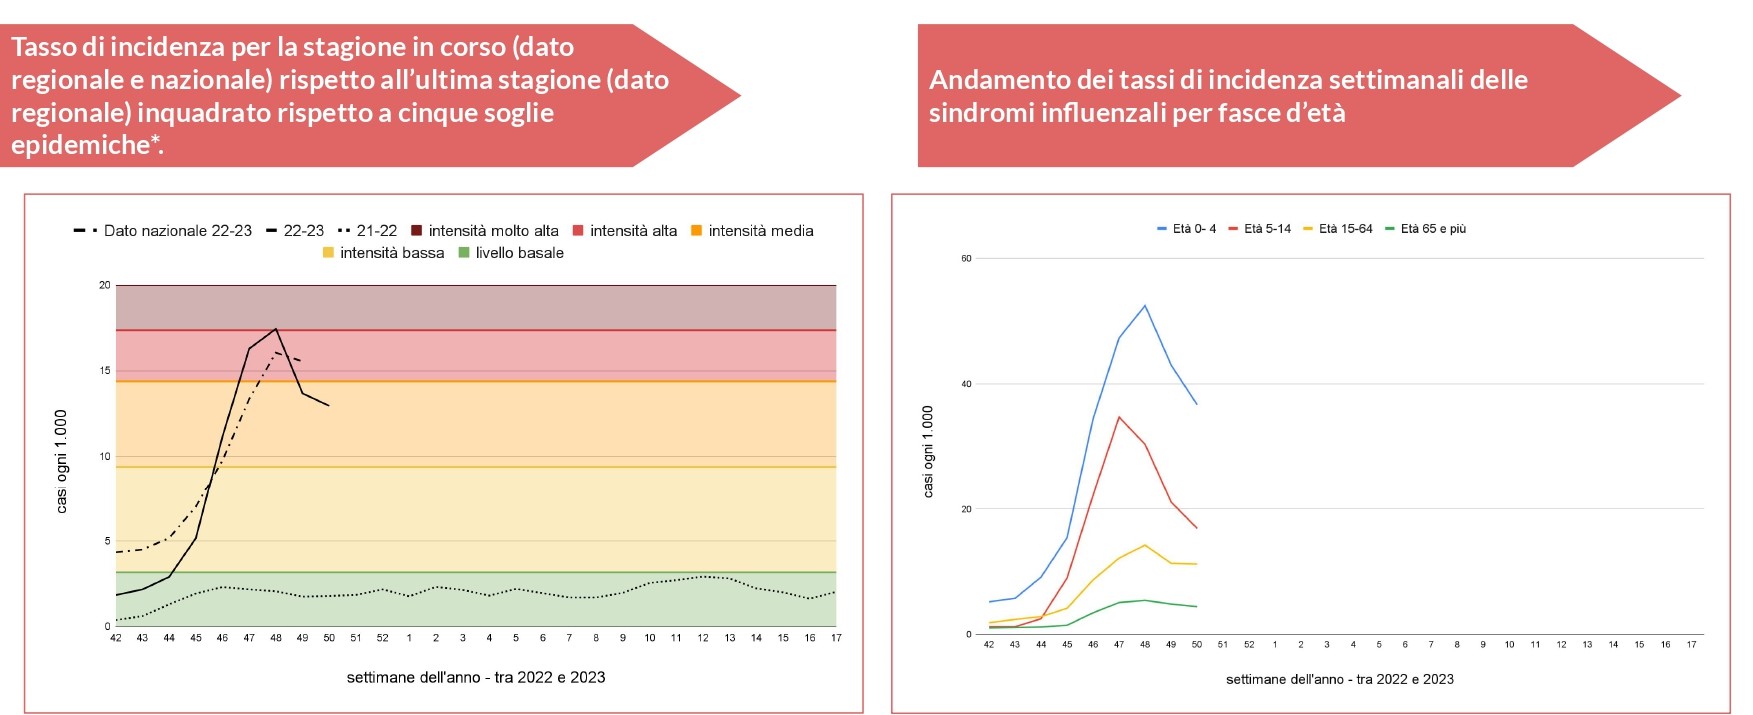 Influenza, scende l’incidenza nel Veneto. Ma resta molto alta per i bambini sino a quattro anni